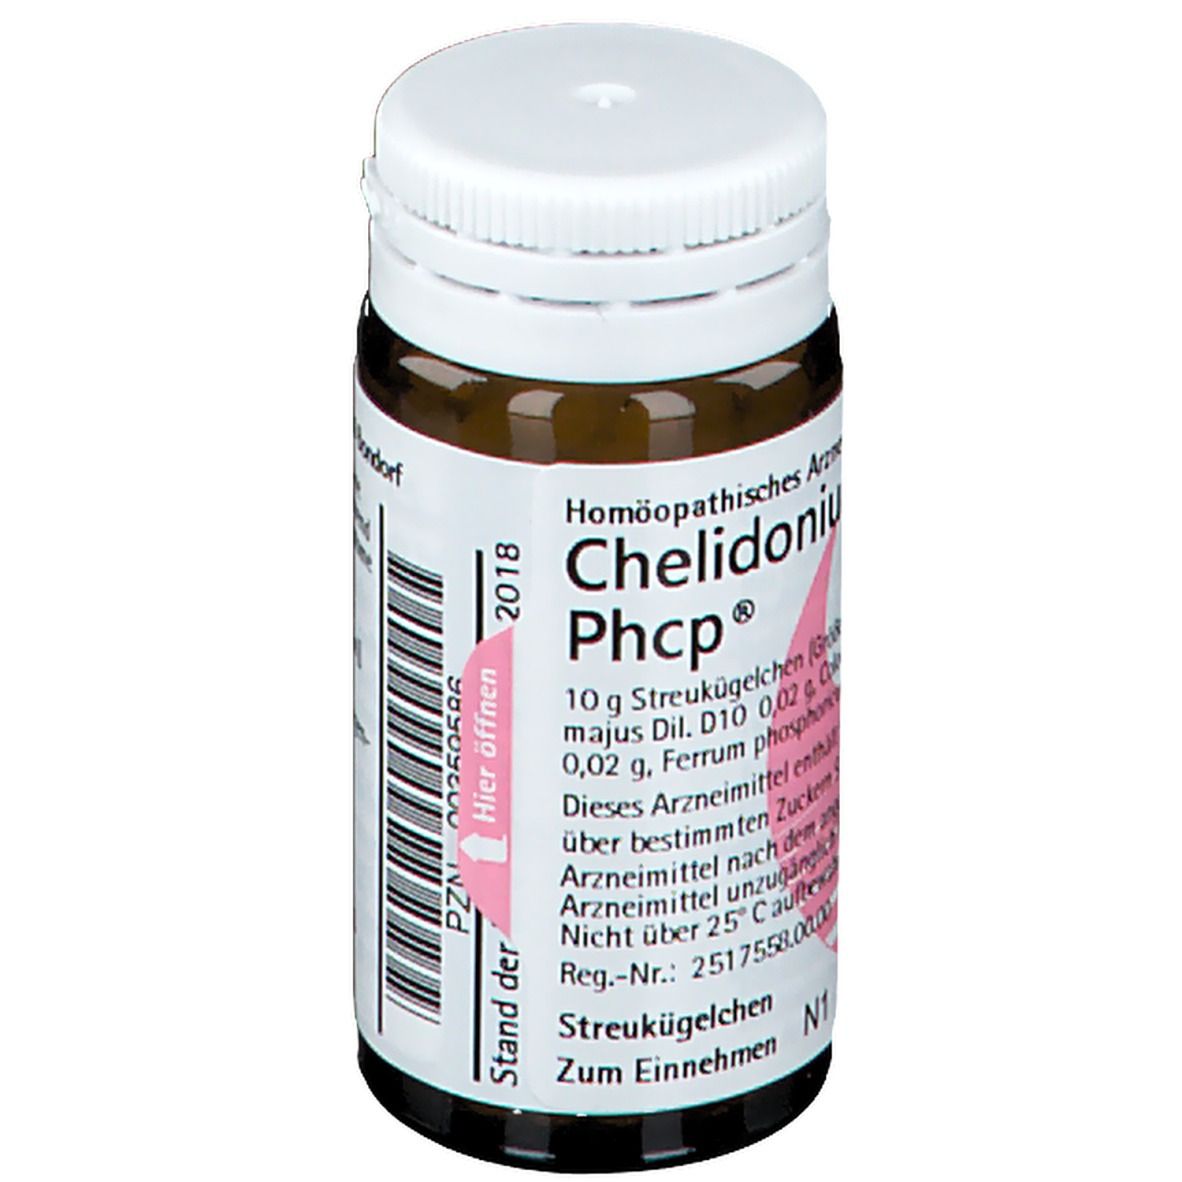 Chelidonium Phcp®